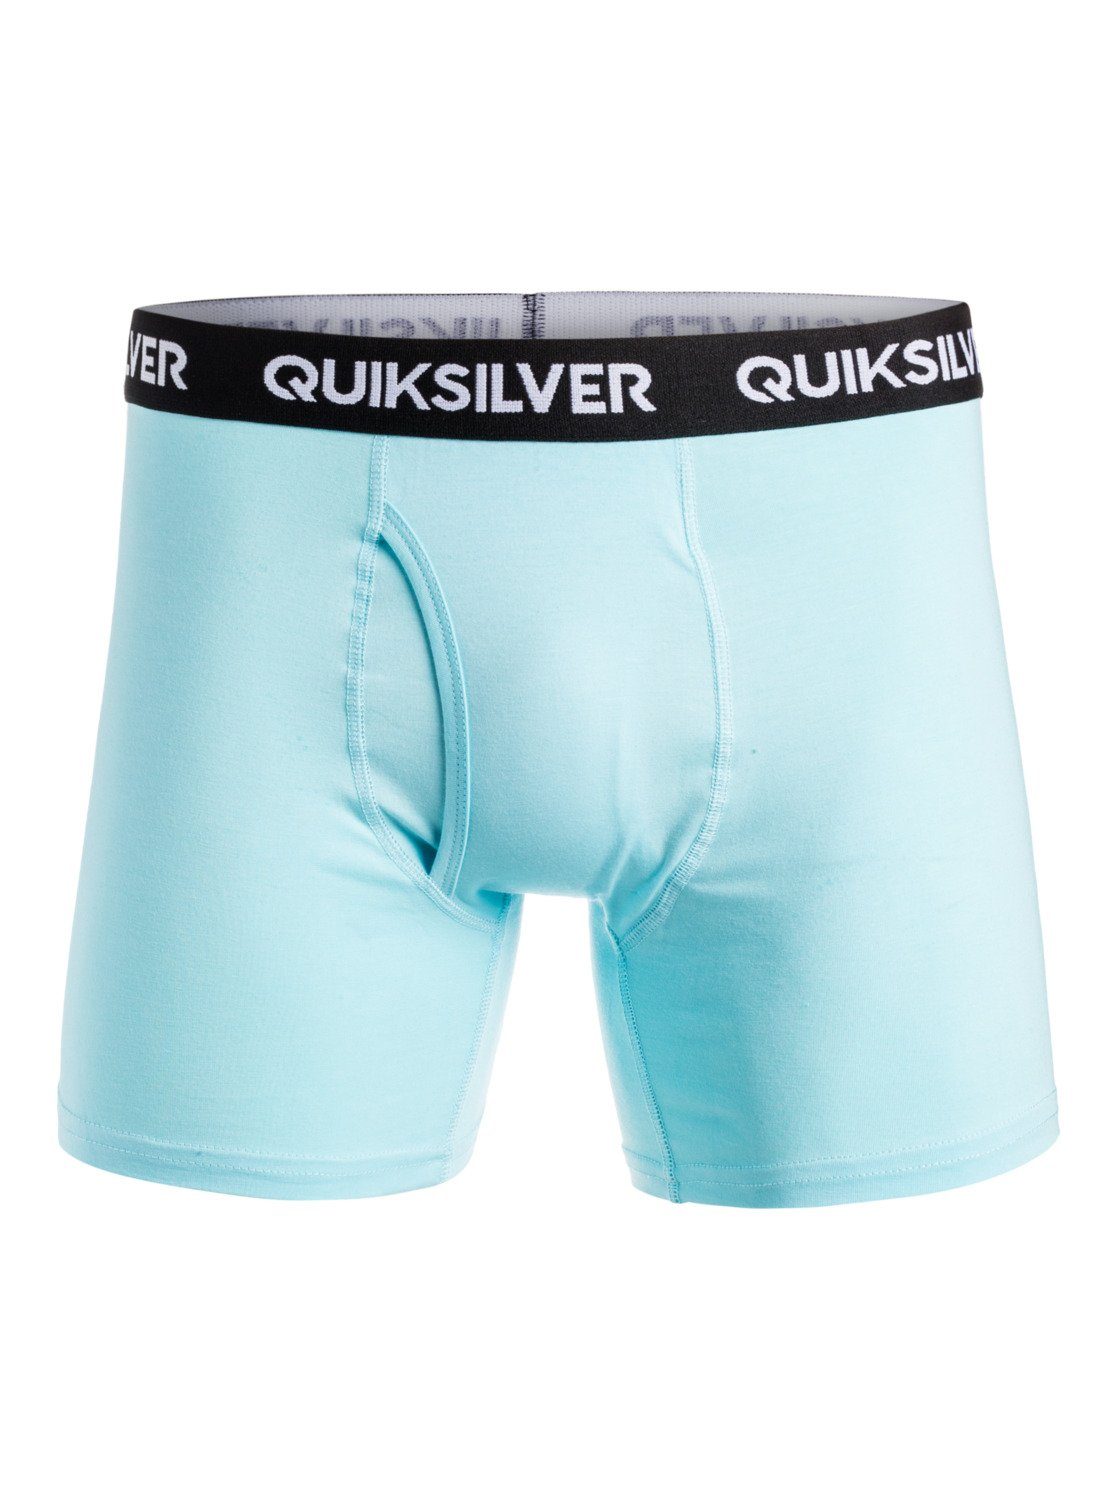 Quiksilver Boxer Core Super Soft